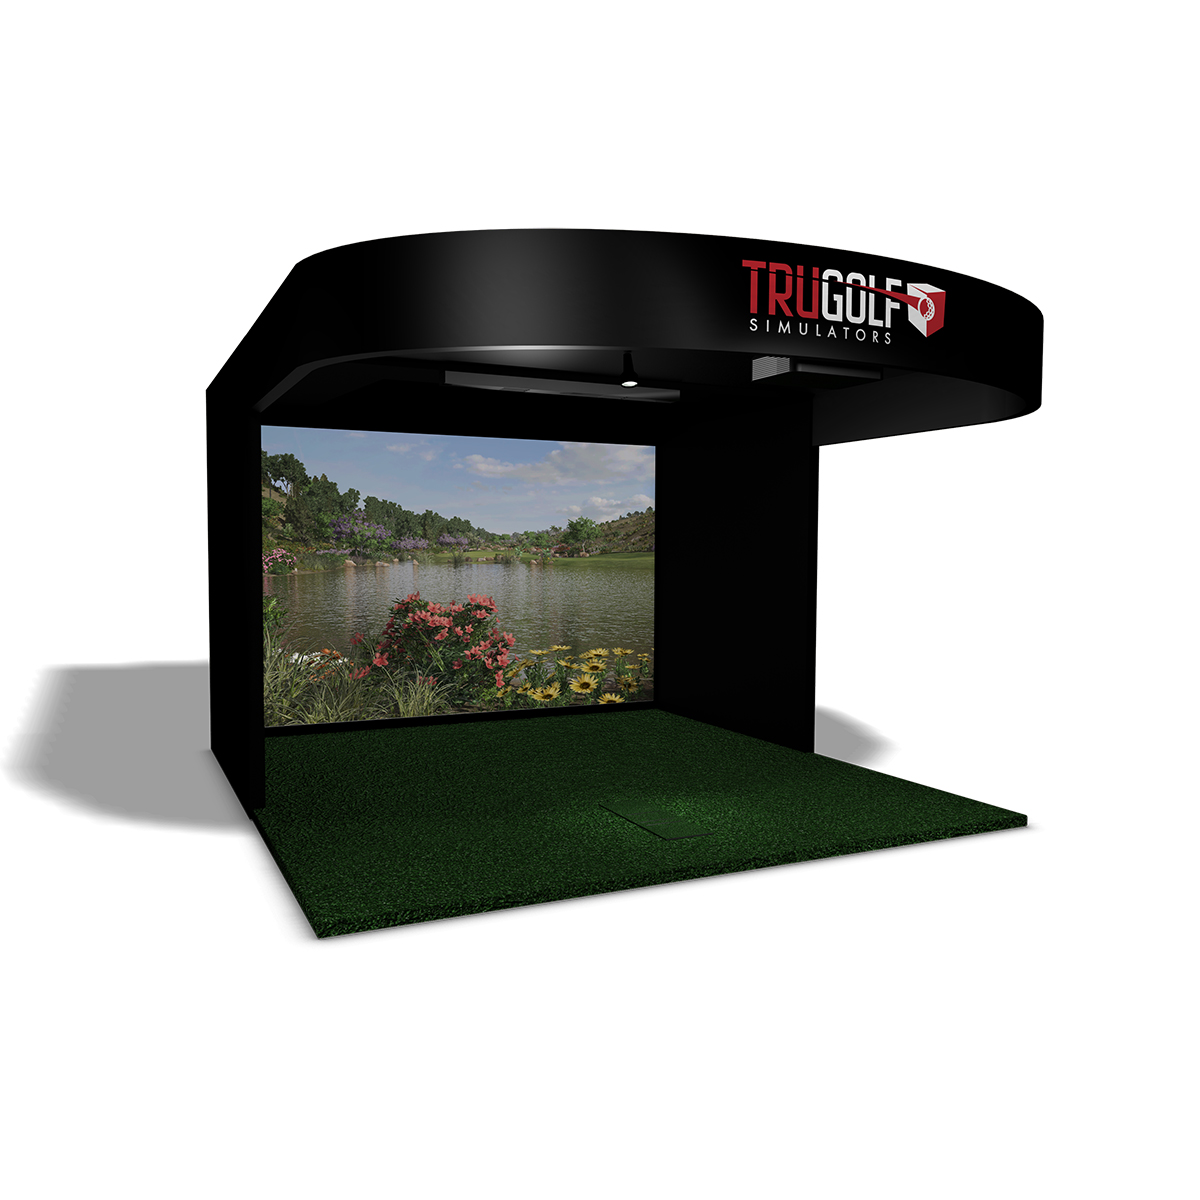 Top Golf Simulators and Golf Video Games In Metro Detroit